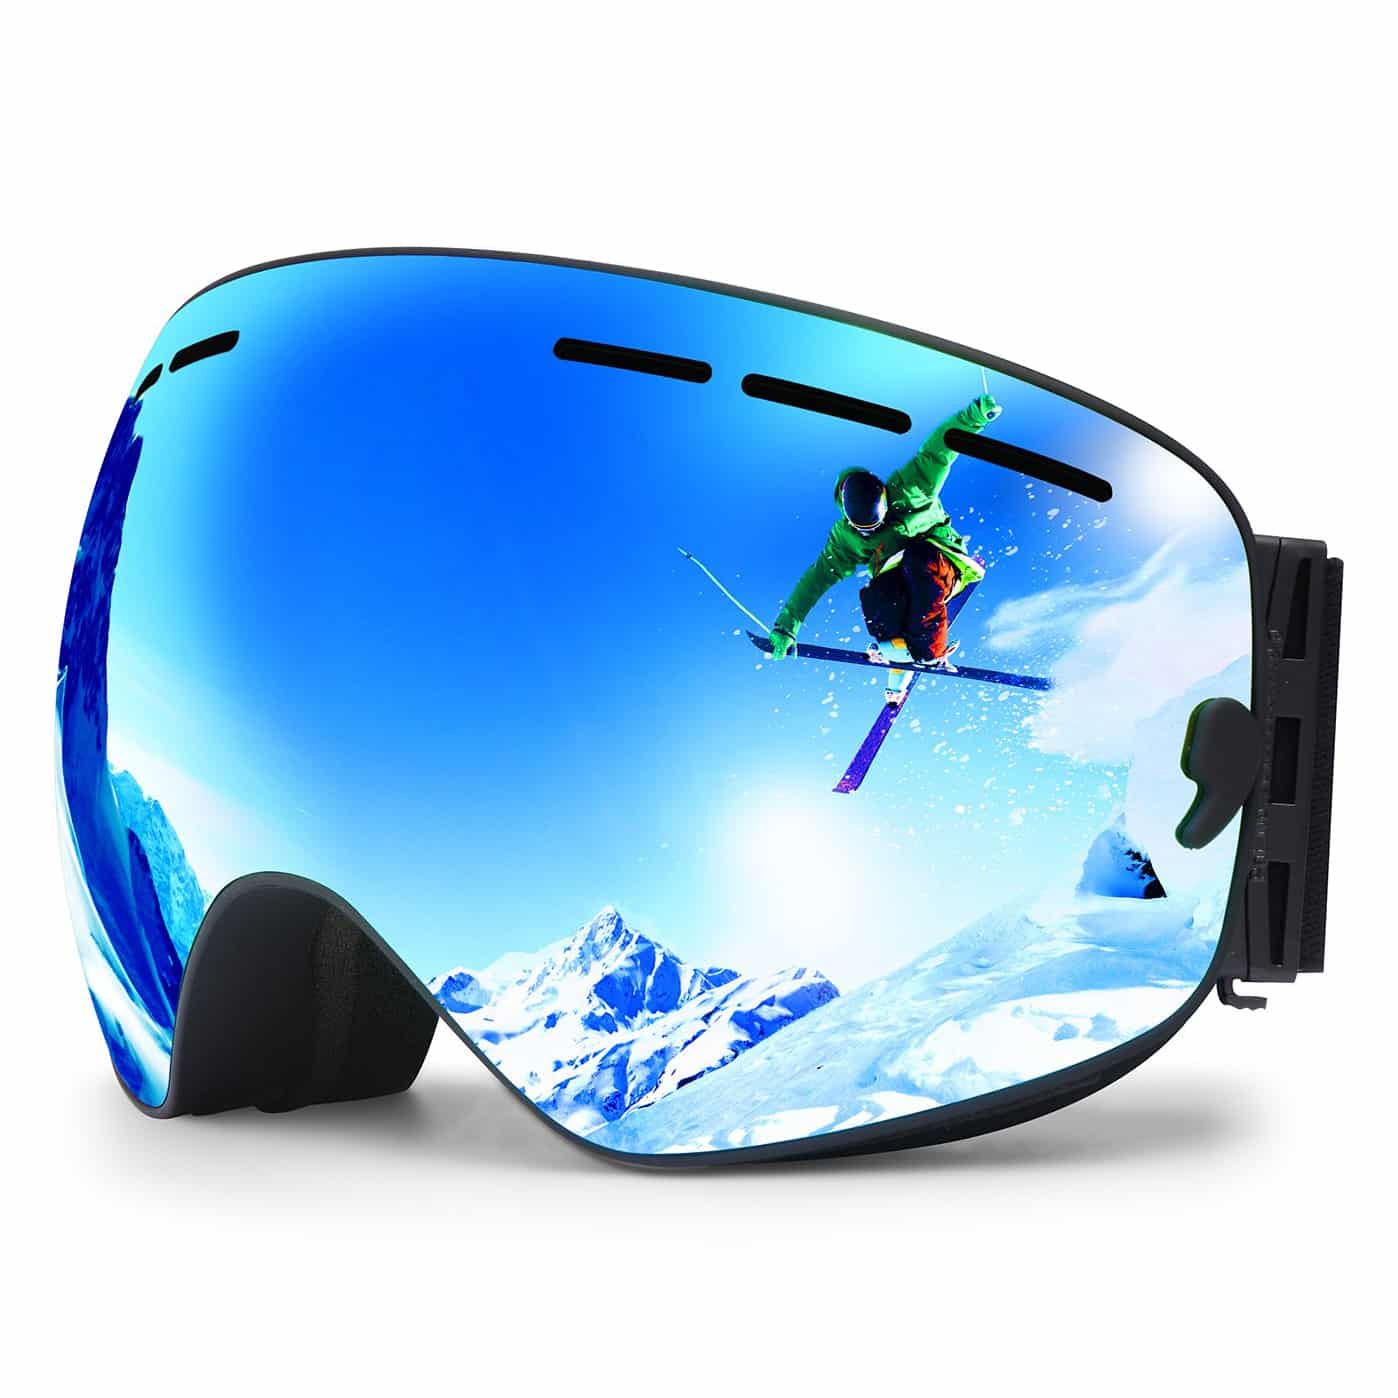 3. Hongdak Ski Goggles Snowboard Goggles 